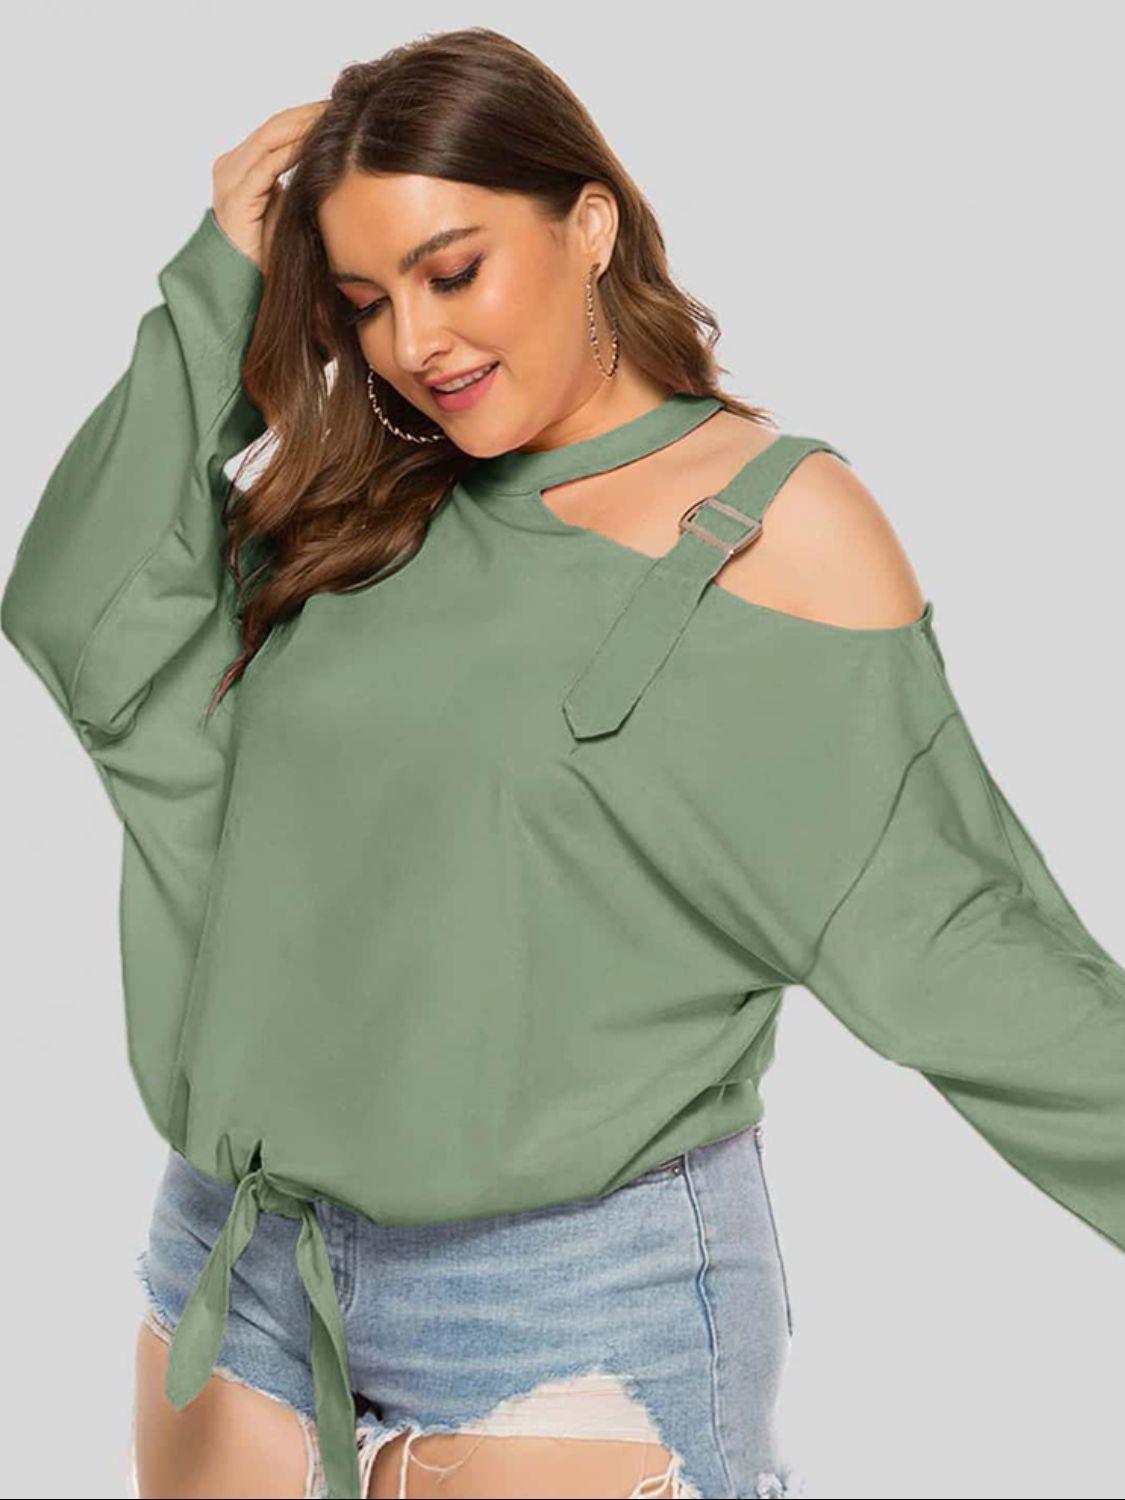 Women's Shirts - Plus Plus Size Cold-Shoulder Tied Top